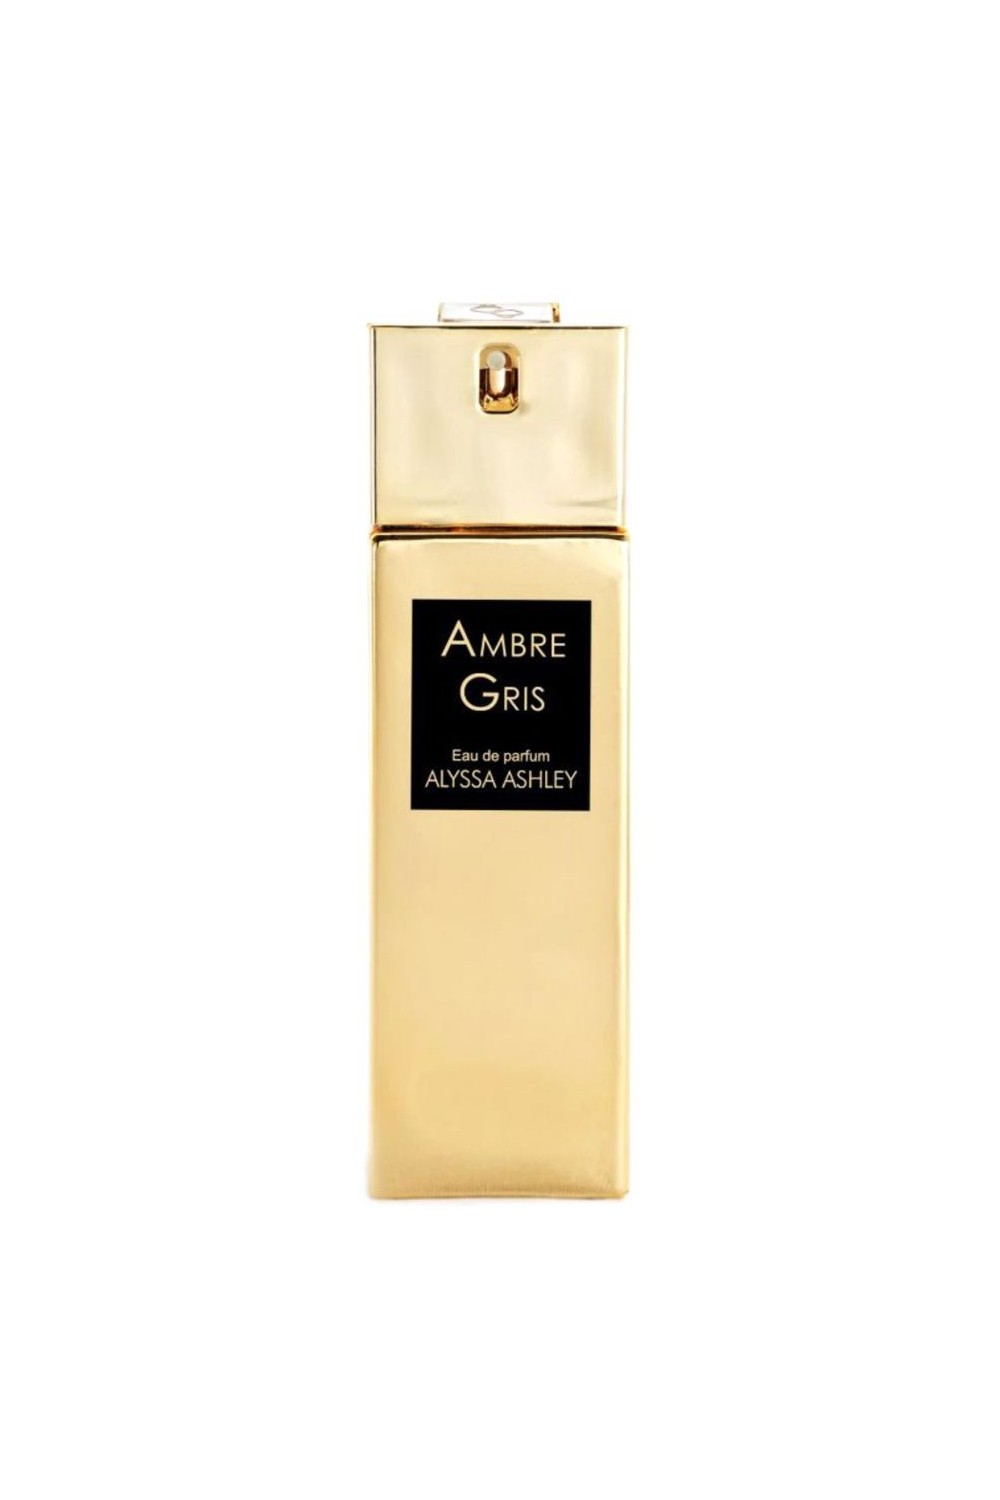 Alyssa Ashley Ambre Gris Eau De Perfume Spray 30ml